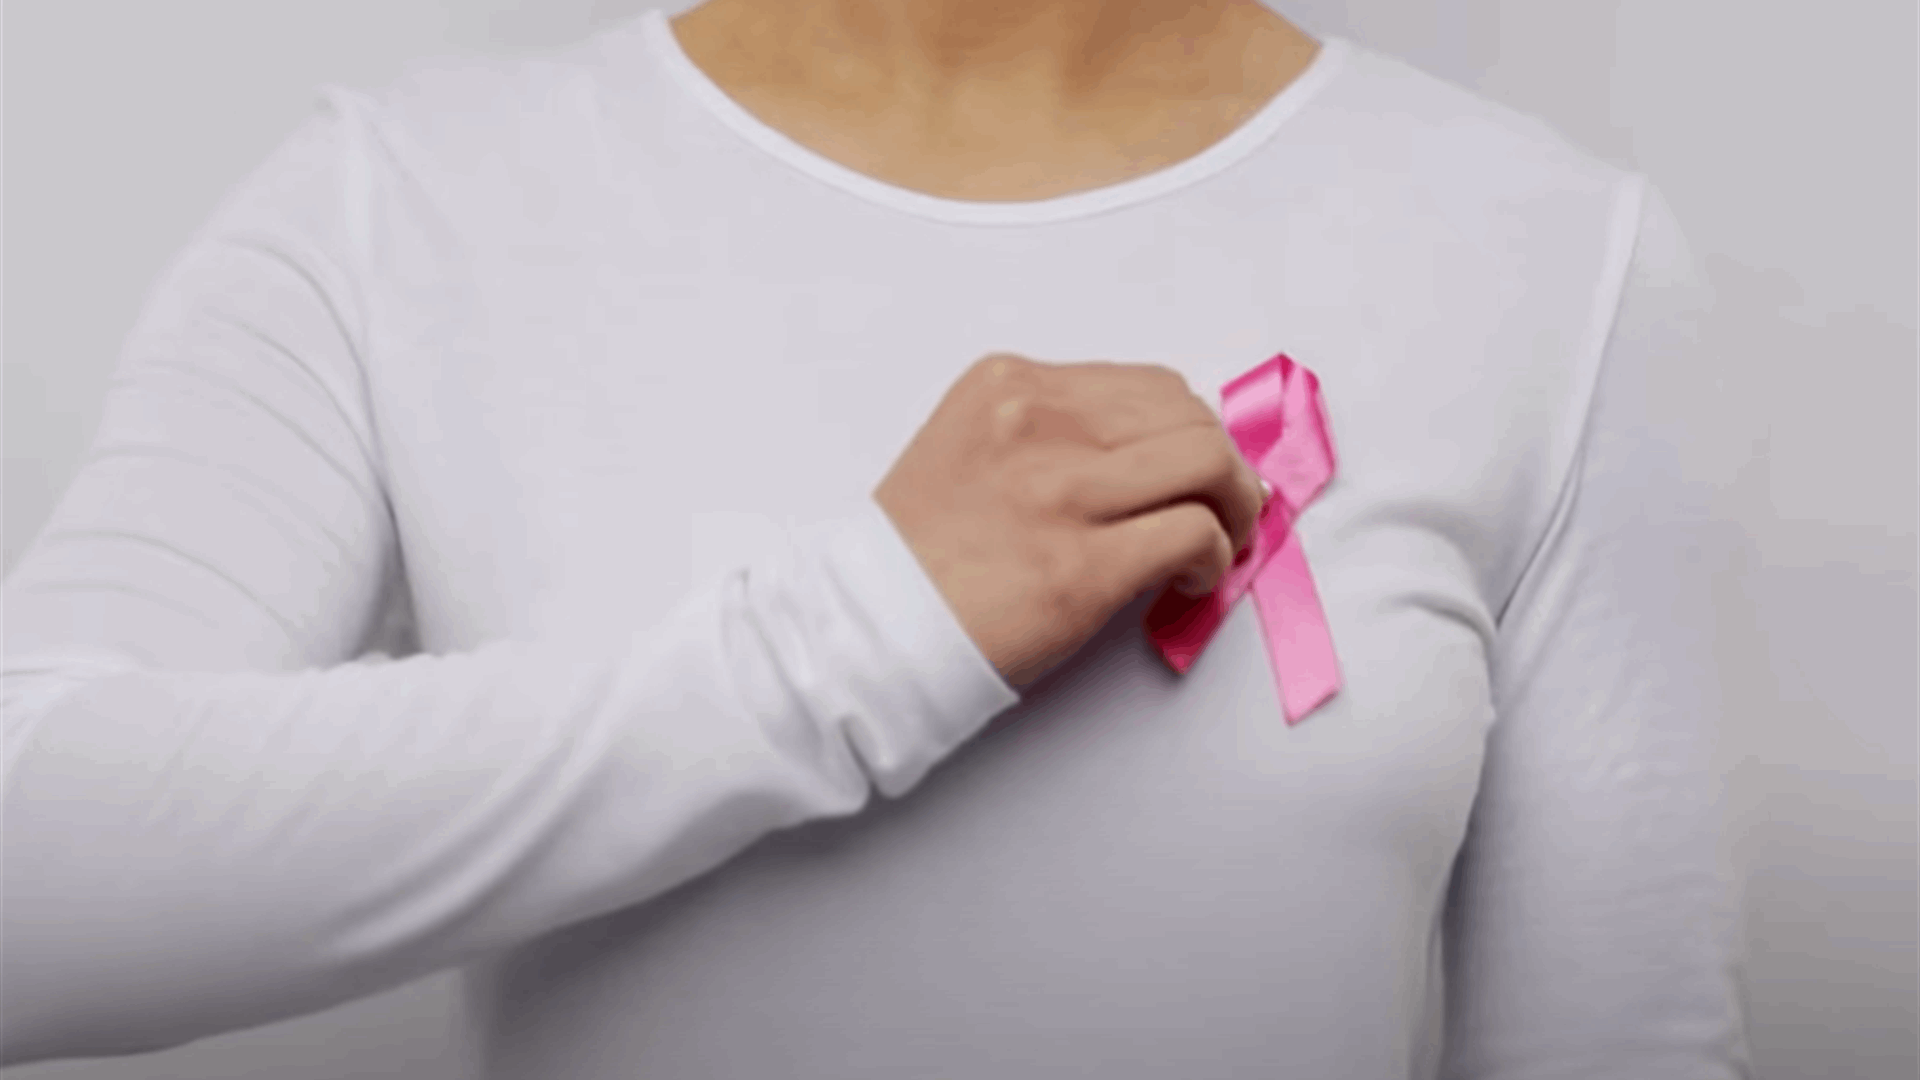 أجّلنا بس مكملين &quot;لأنّو سرطان الثدي إنت بتهزميه!&quot;... ترقبوا الحلقة المخصصة بالتوعية حول سرطان الثدي بموعد جديد